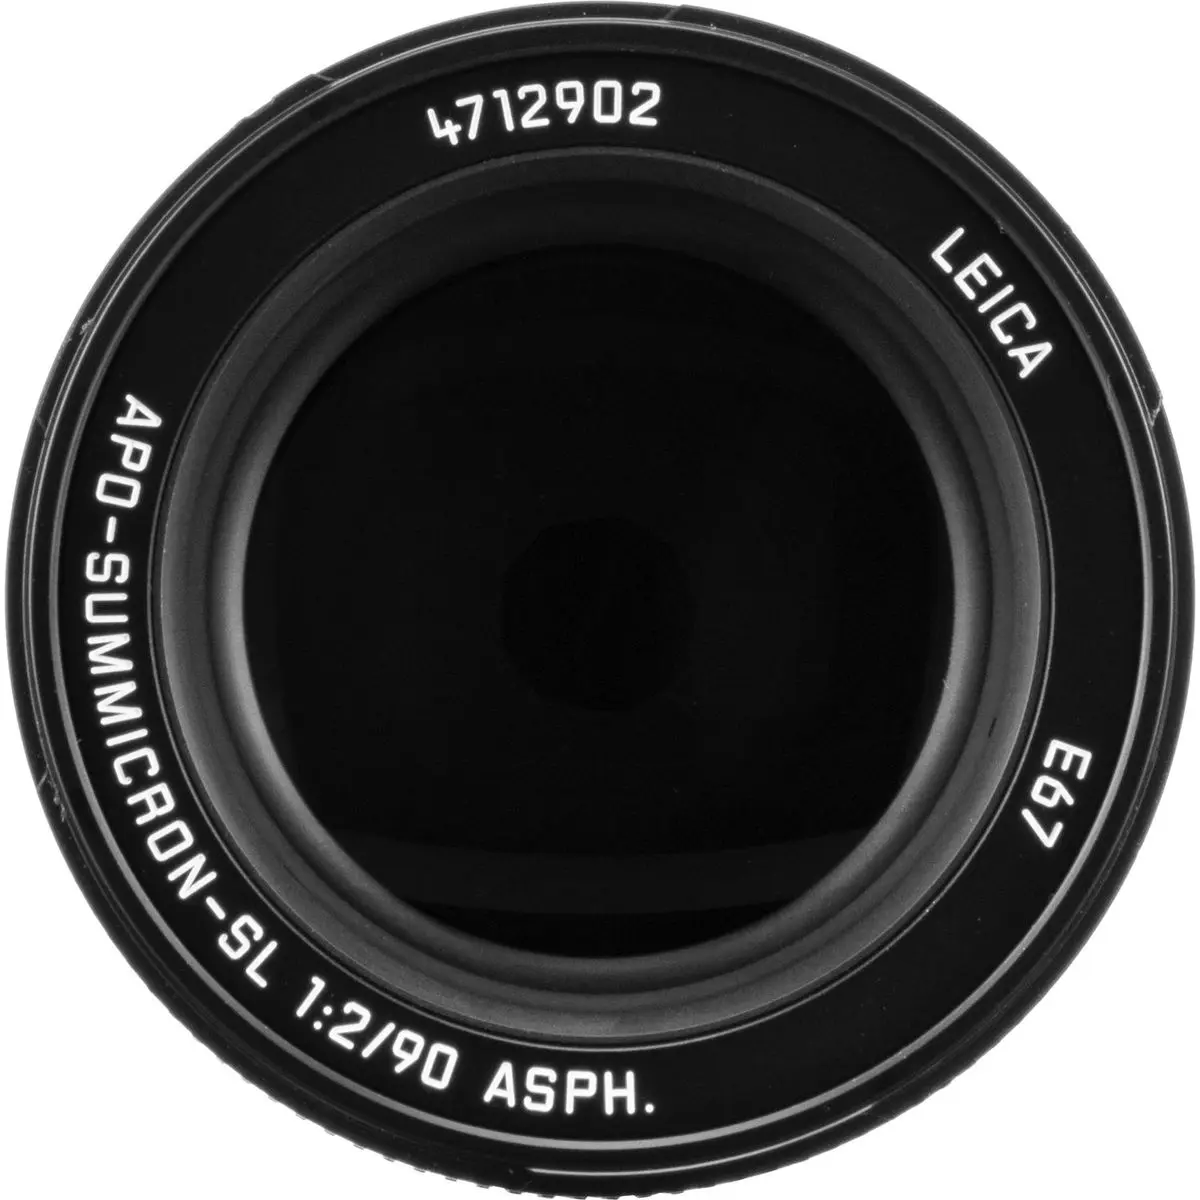 5. Leica APO-Summicron-SL 90mm f/2 ASPH (11179) Lens